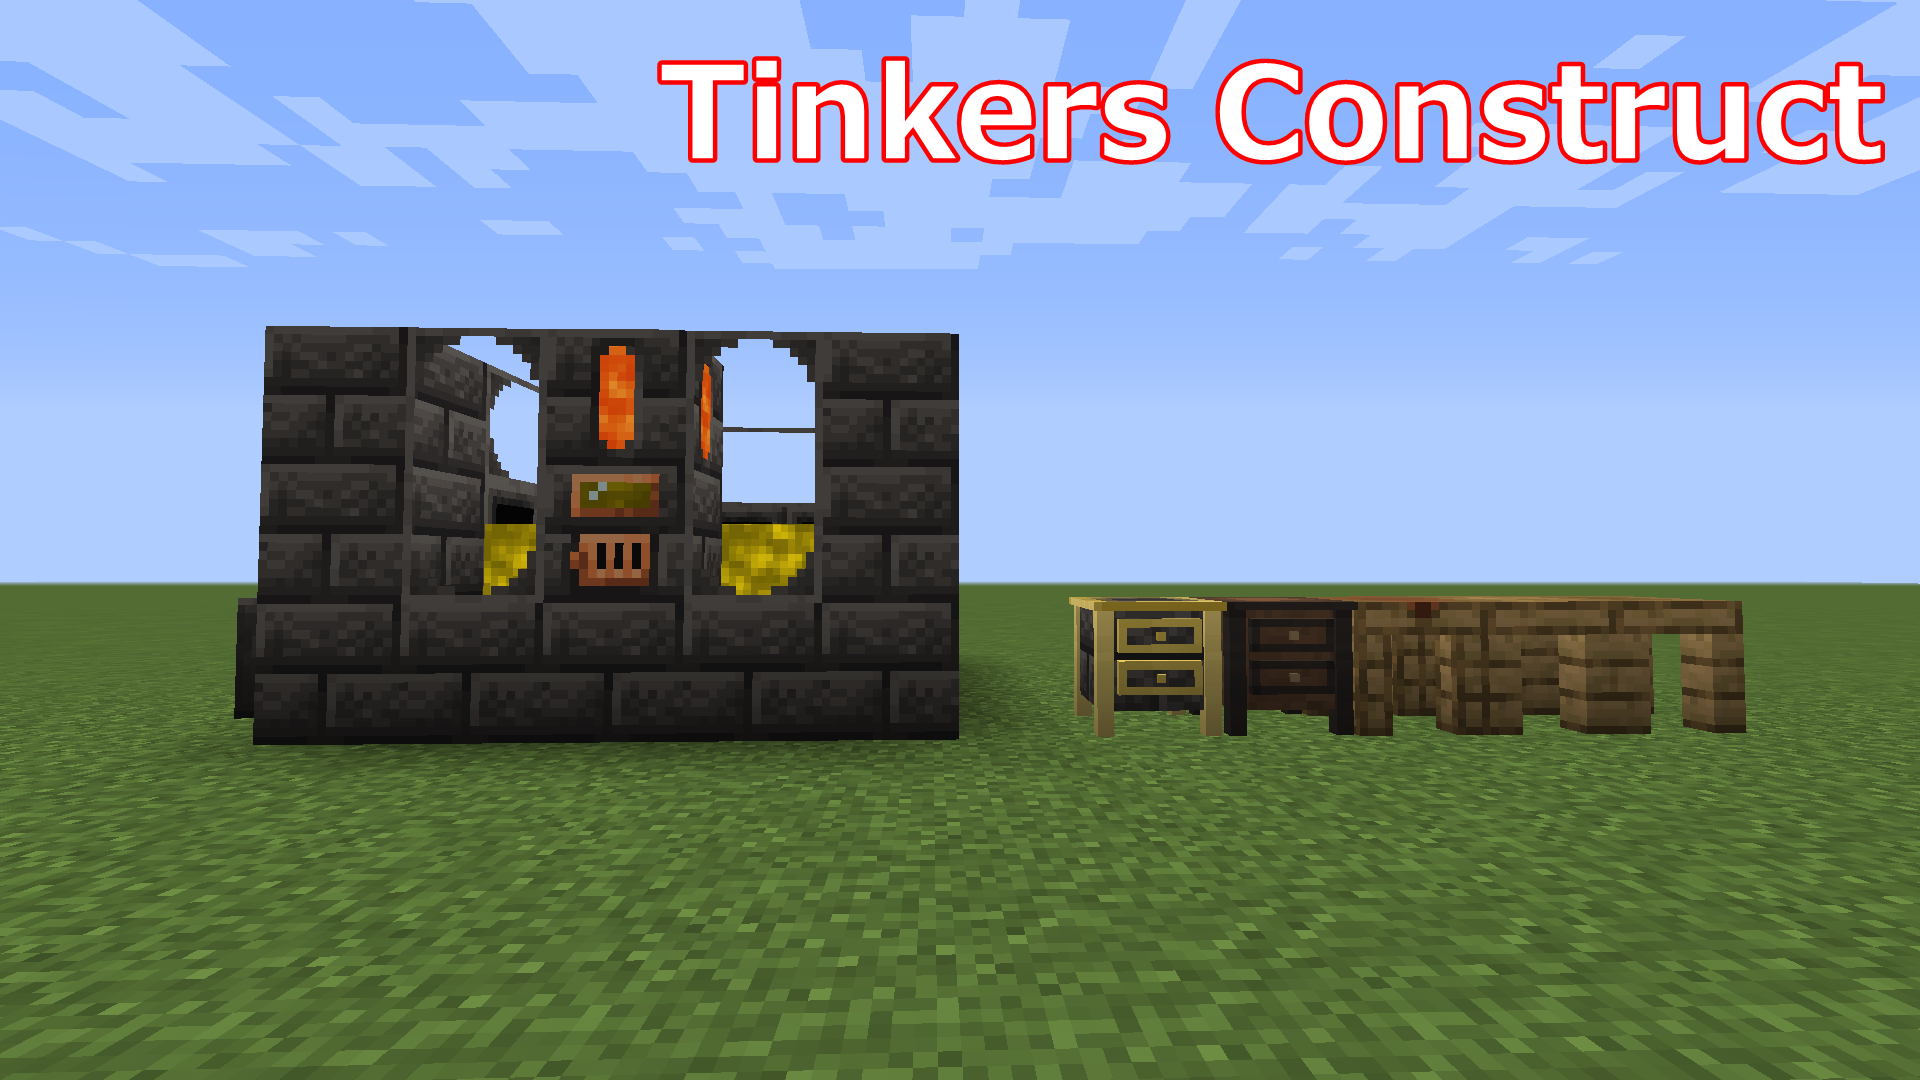 マインクラフトmod紹介 ツールの作成をより楽しく Tinkers Construct 1 16 5 Minbのブログ部屋